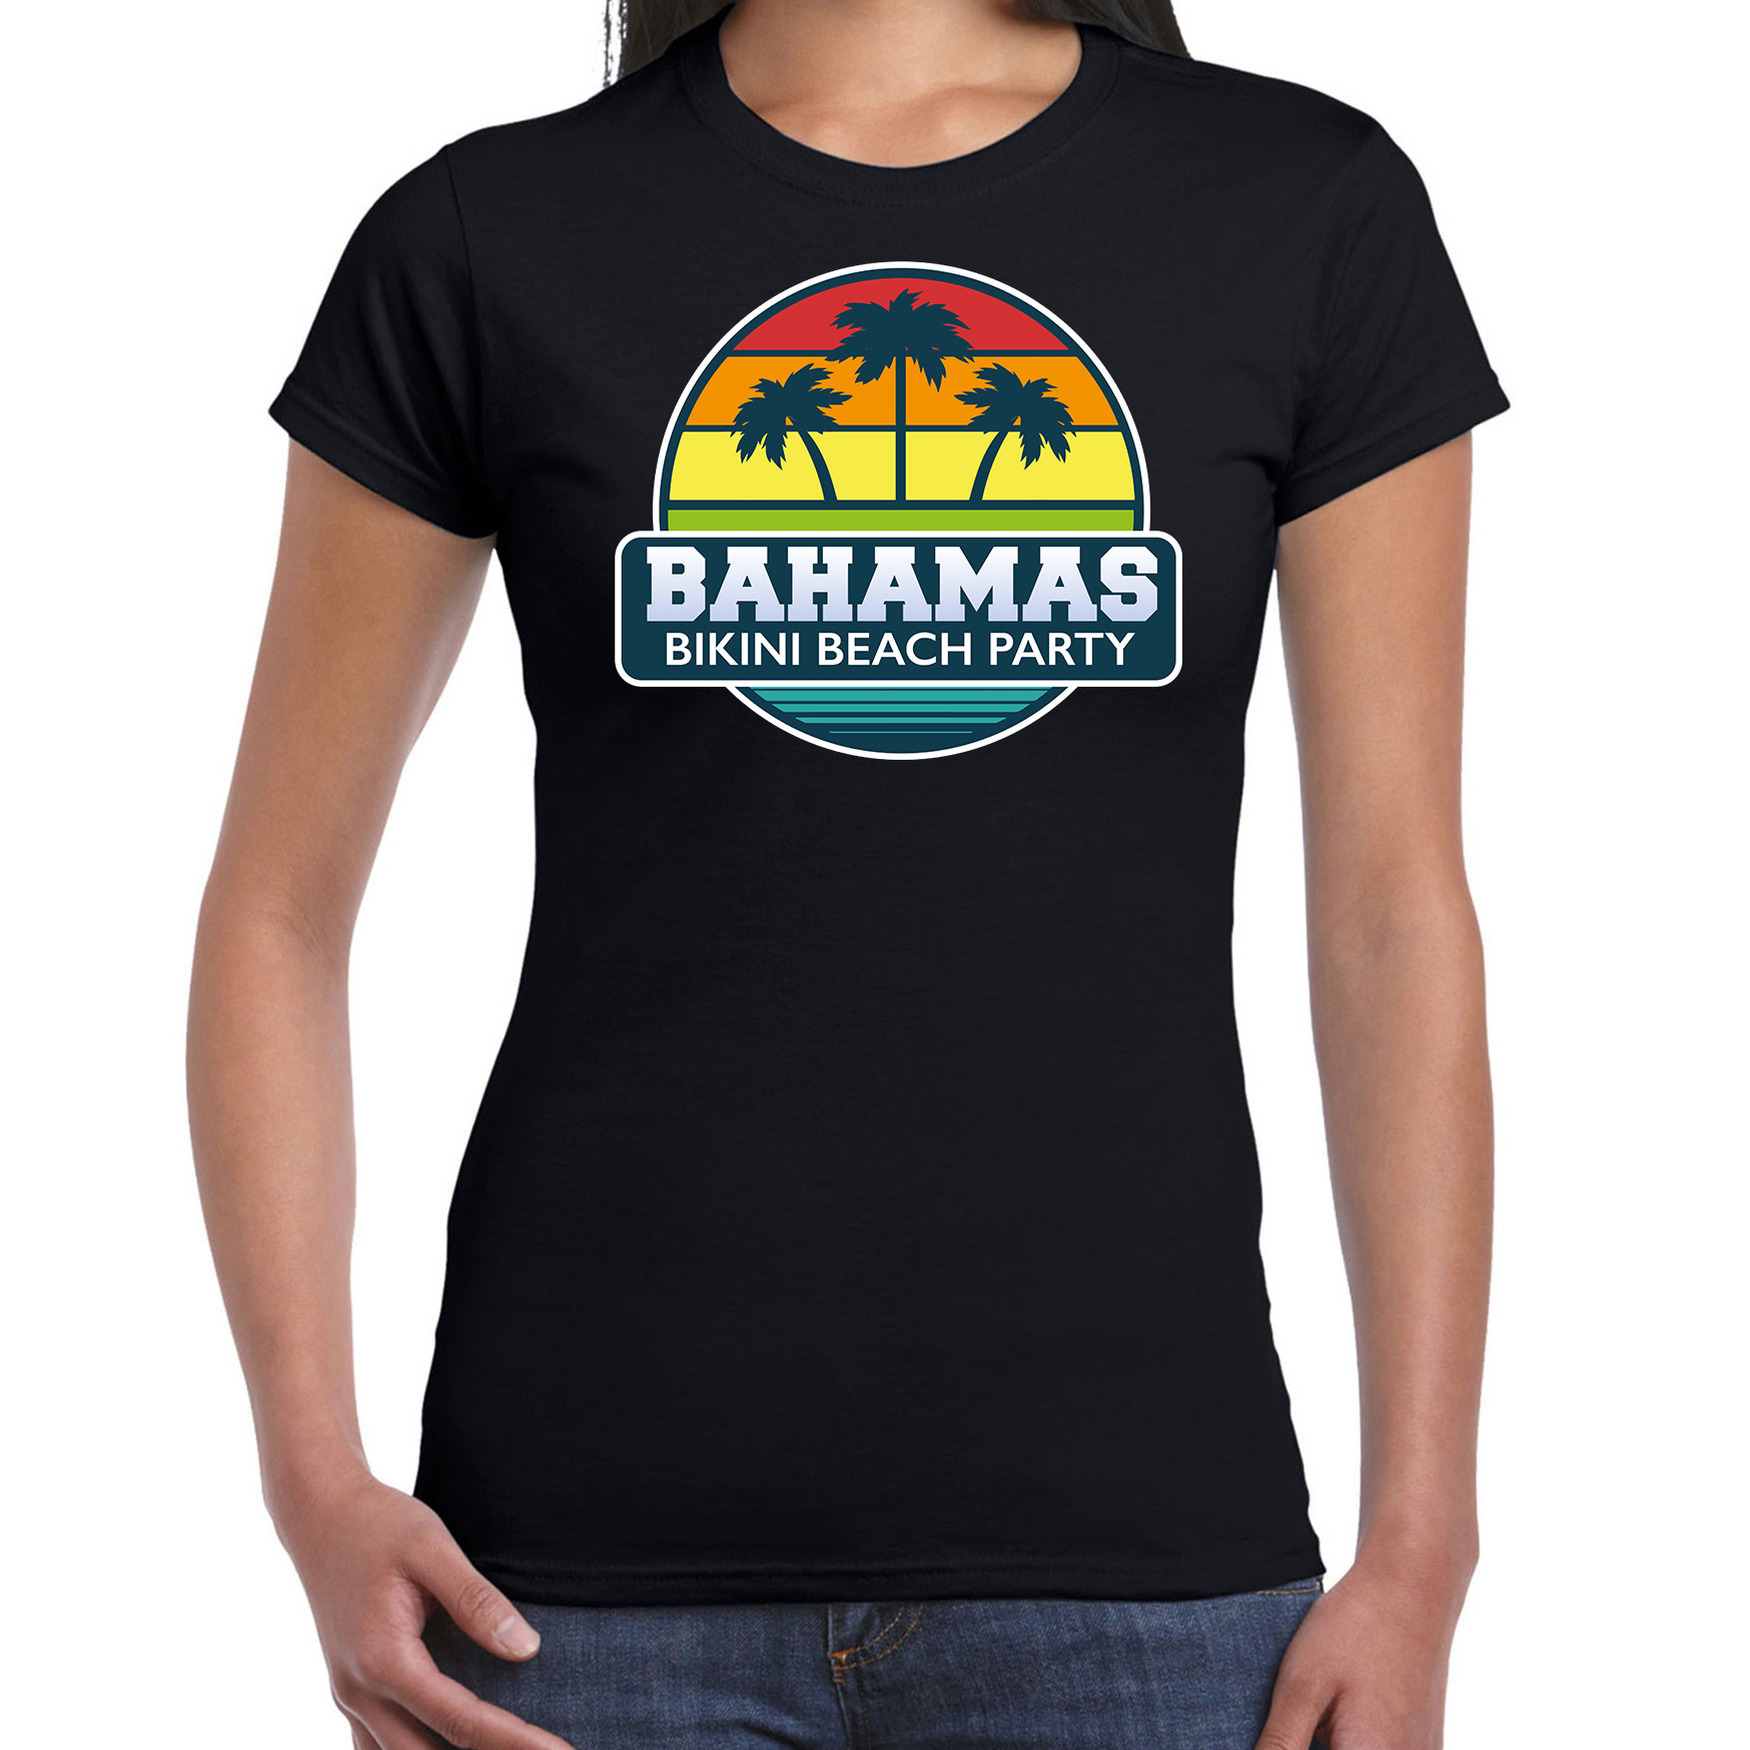 Bahamas zomer t-shirt - shirt Bahamas bikini beach party zwart voor dames